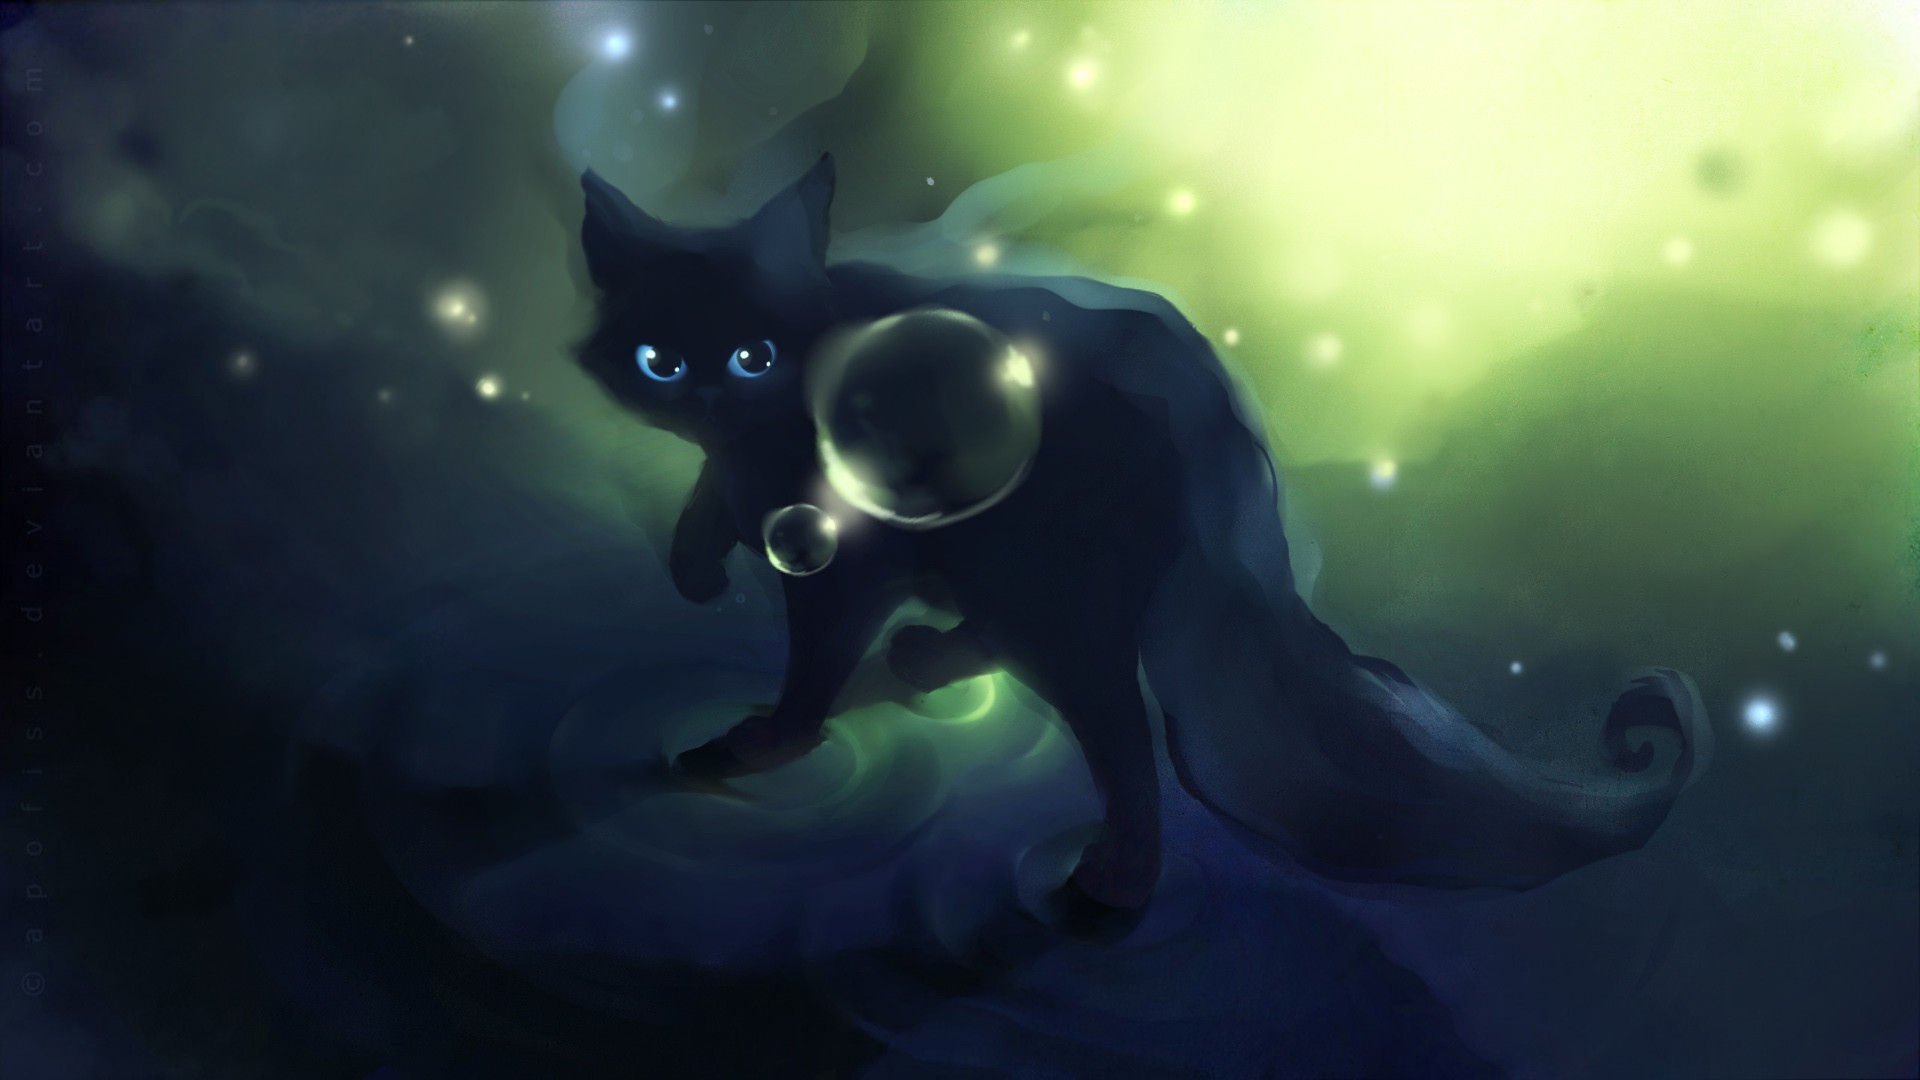 Cute Black Cat Painting Wallpaper HD